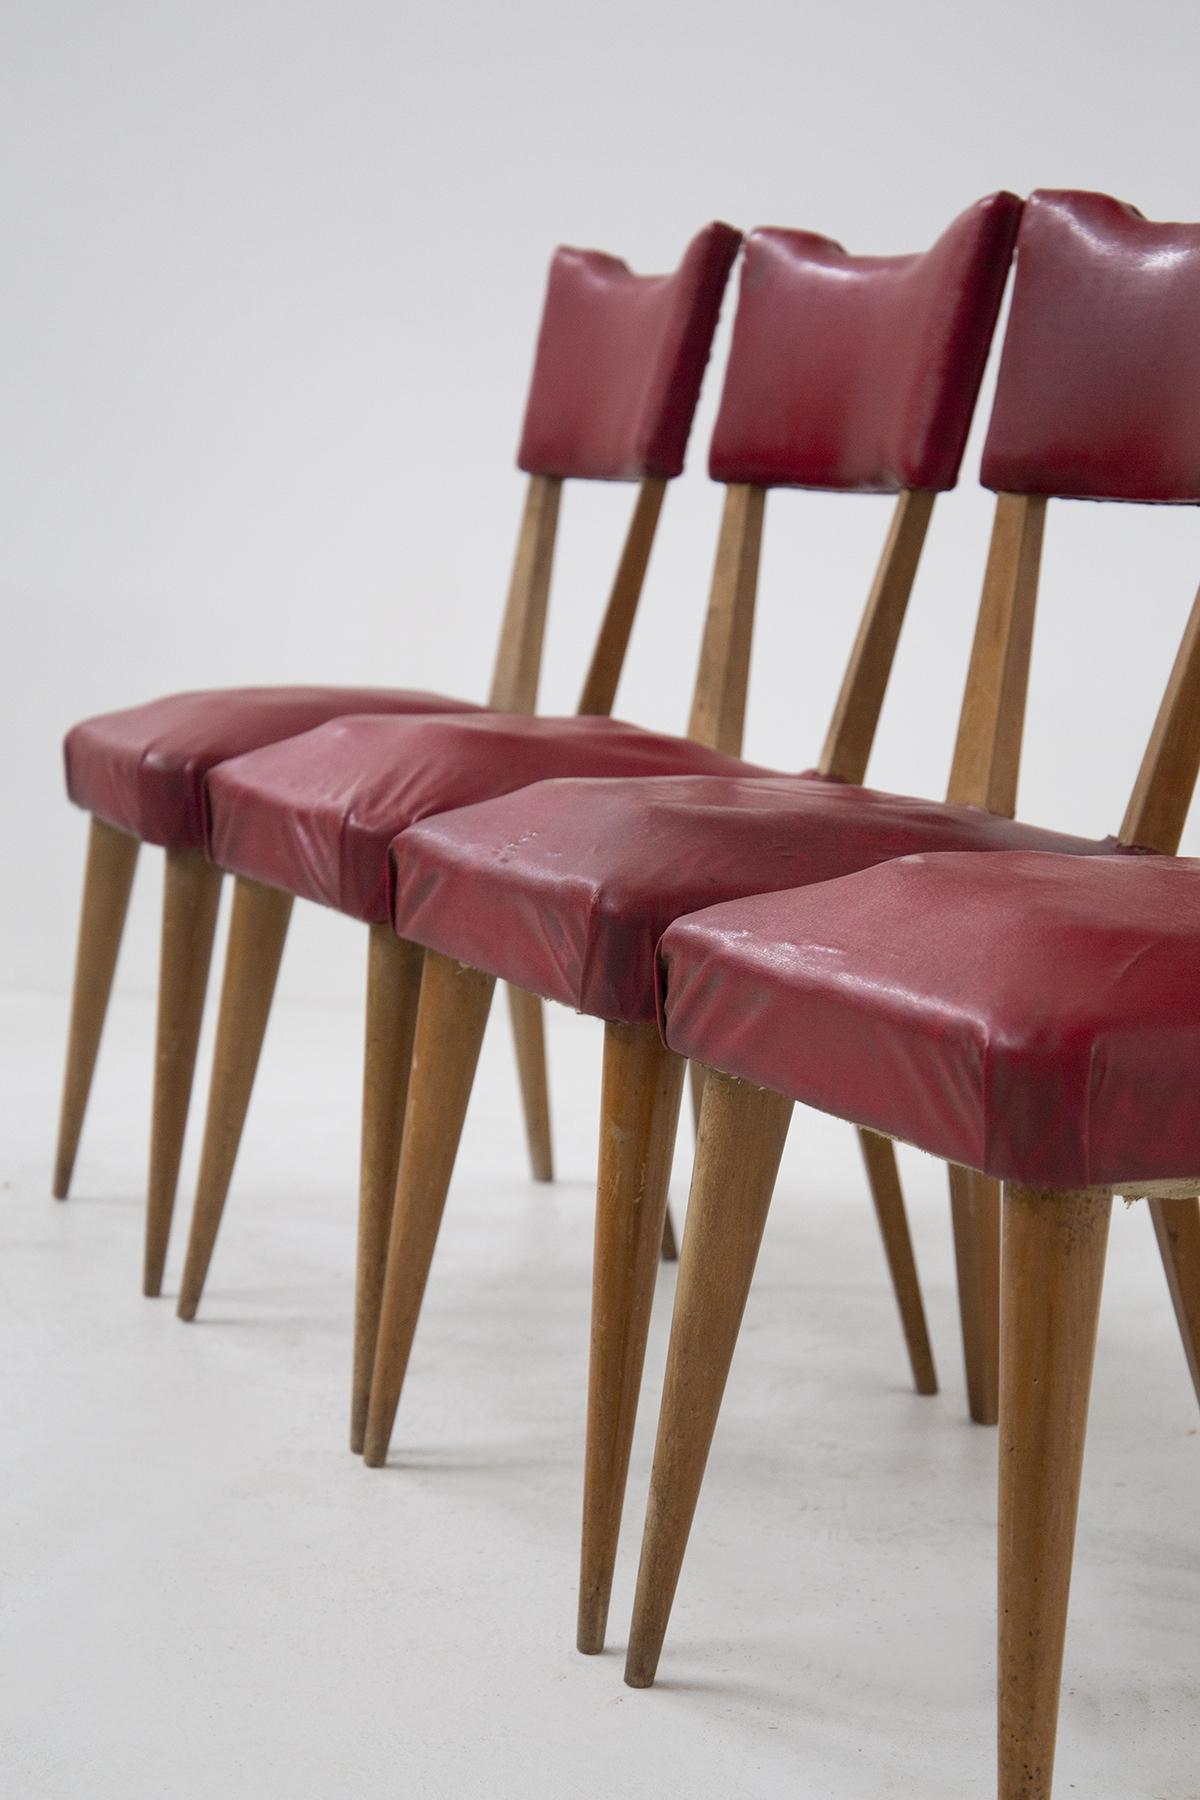 Dieses schöne Set aus vier Vintage-Stühlen stammt aus den 50er Jahren. Mit einer soliden Struktur aus Holz und einer Polsterung aus rotem Sky-Leder sind die Vintage-Stühle aus feiner französischer Fertigung. Sie eignen sich am besten für